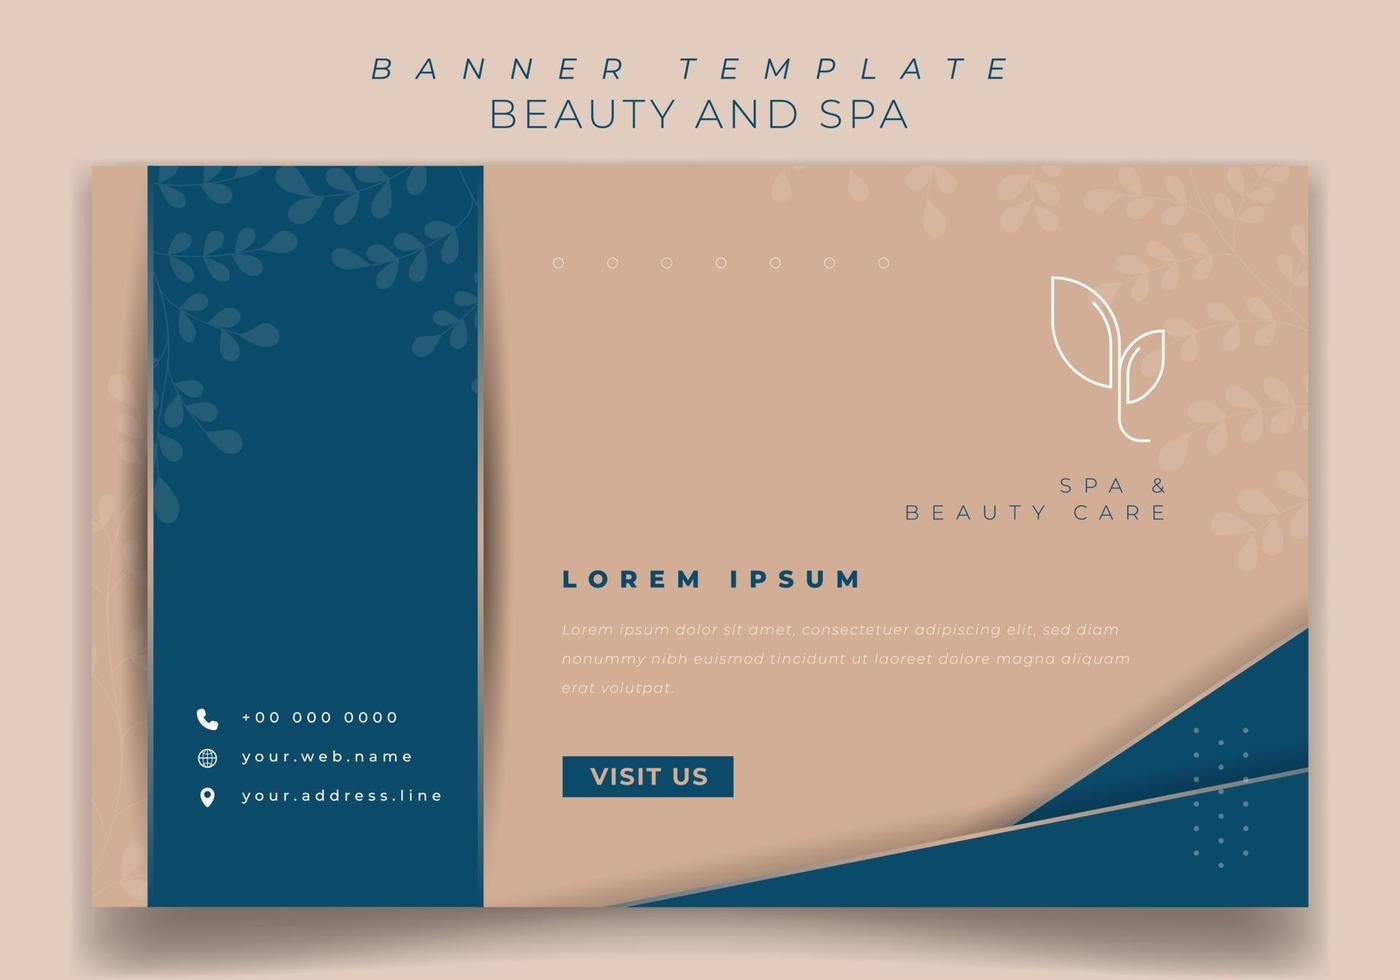 Banner-Template-Design in Blau und Pink mit luxuriösem Hintergrunddesign für Spa-Werbedesign vektor